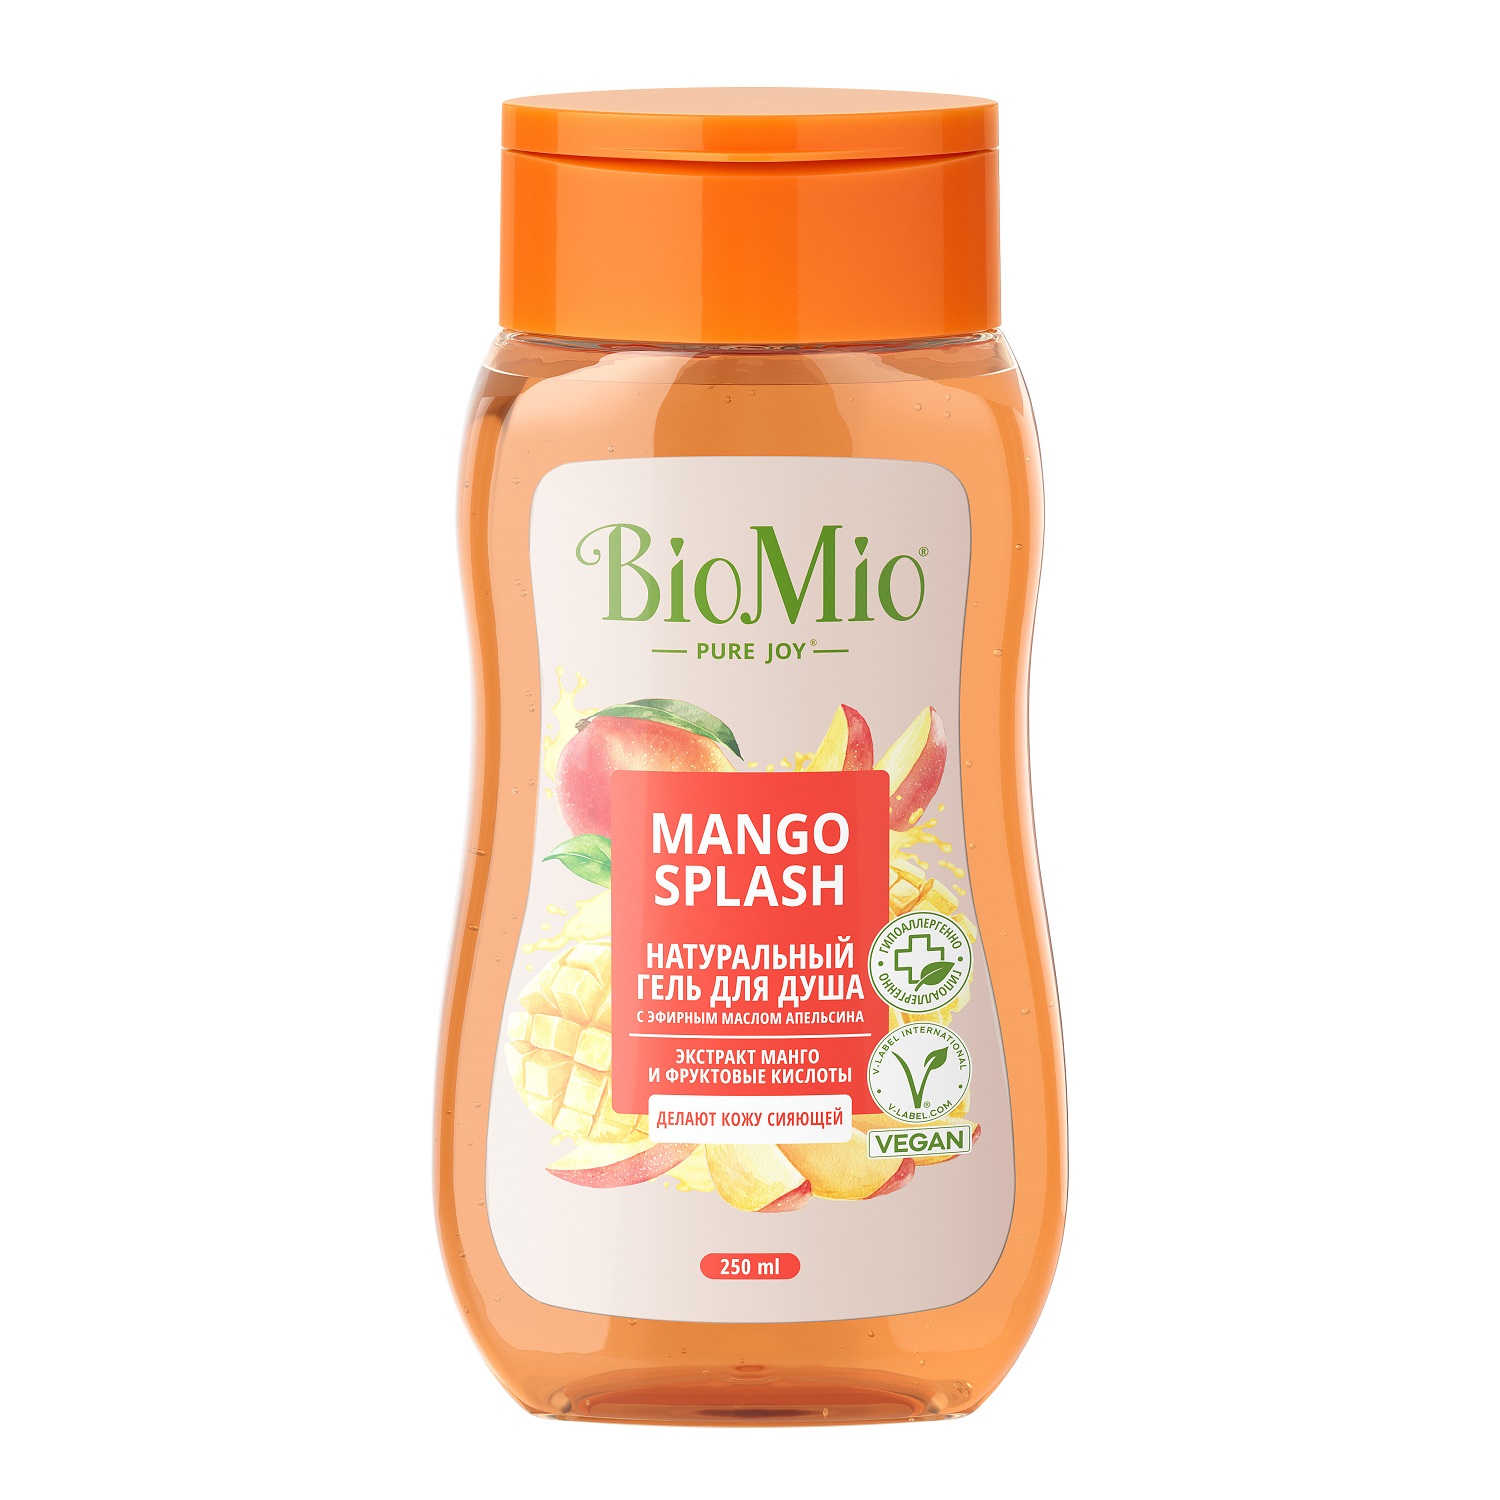 BioMio Гель для душа с экстрактом манго Mango Splash, 250 мл (BioMio, Для ванны и душа) biomio гель для душа с экстрактом манго mango splash 250 мл biomio для ванны и душа